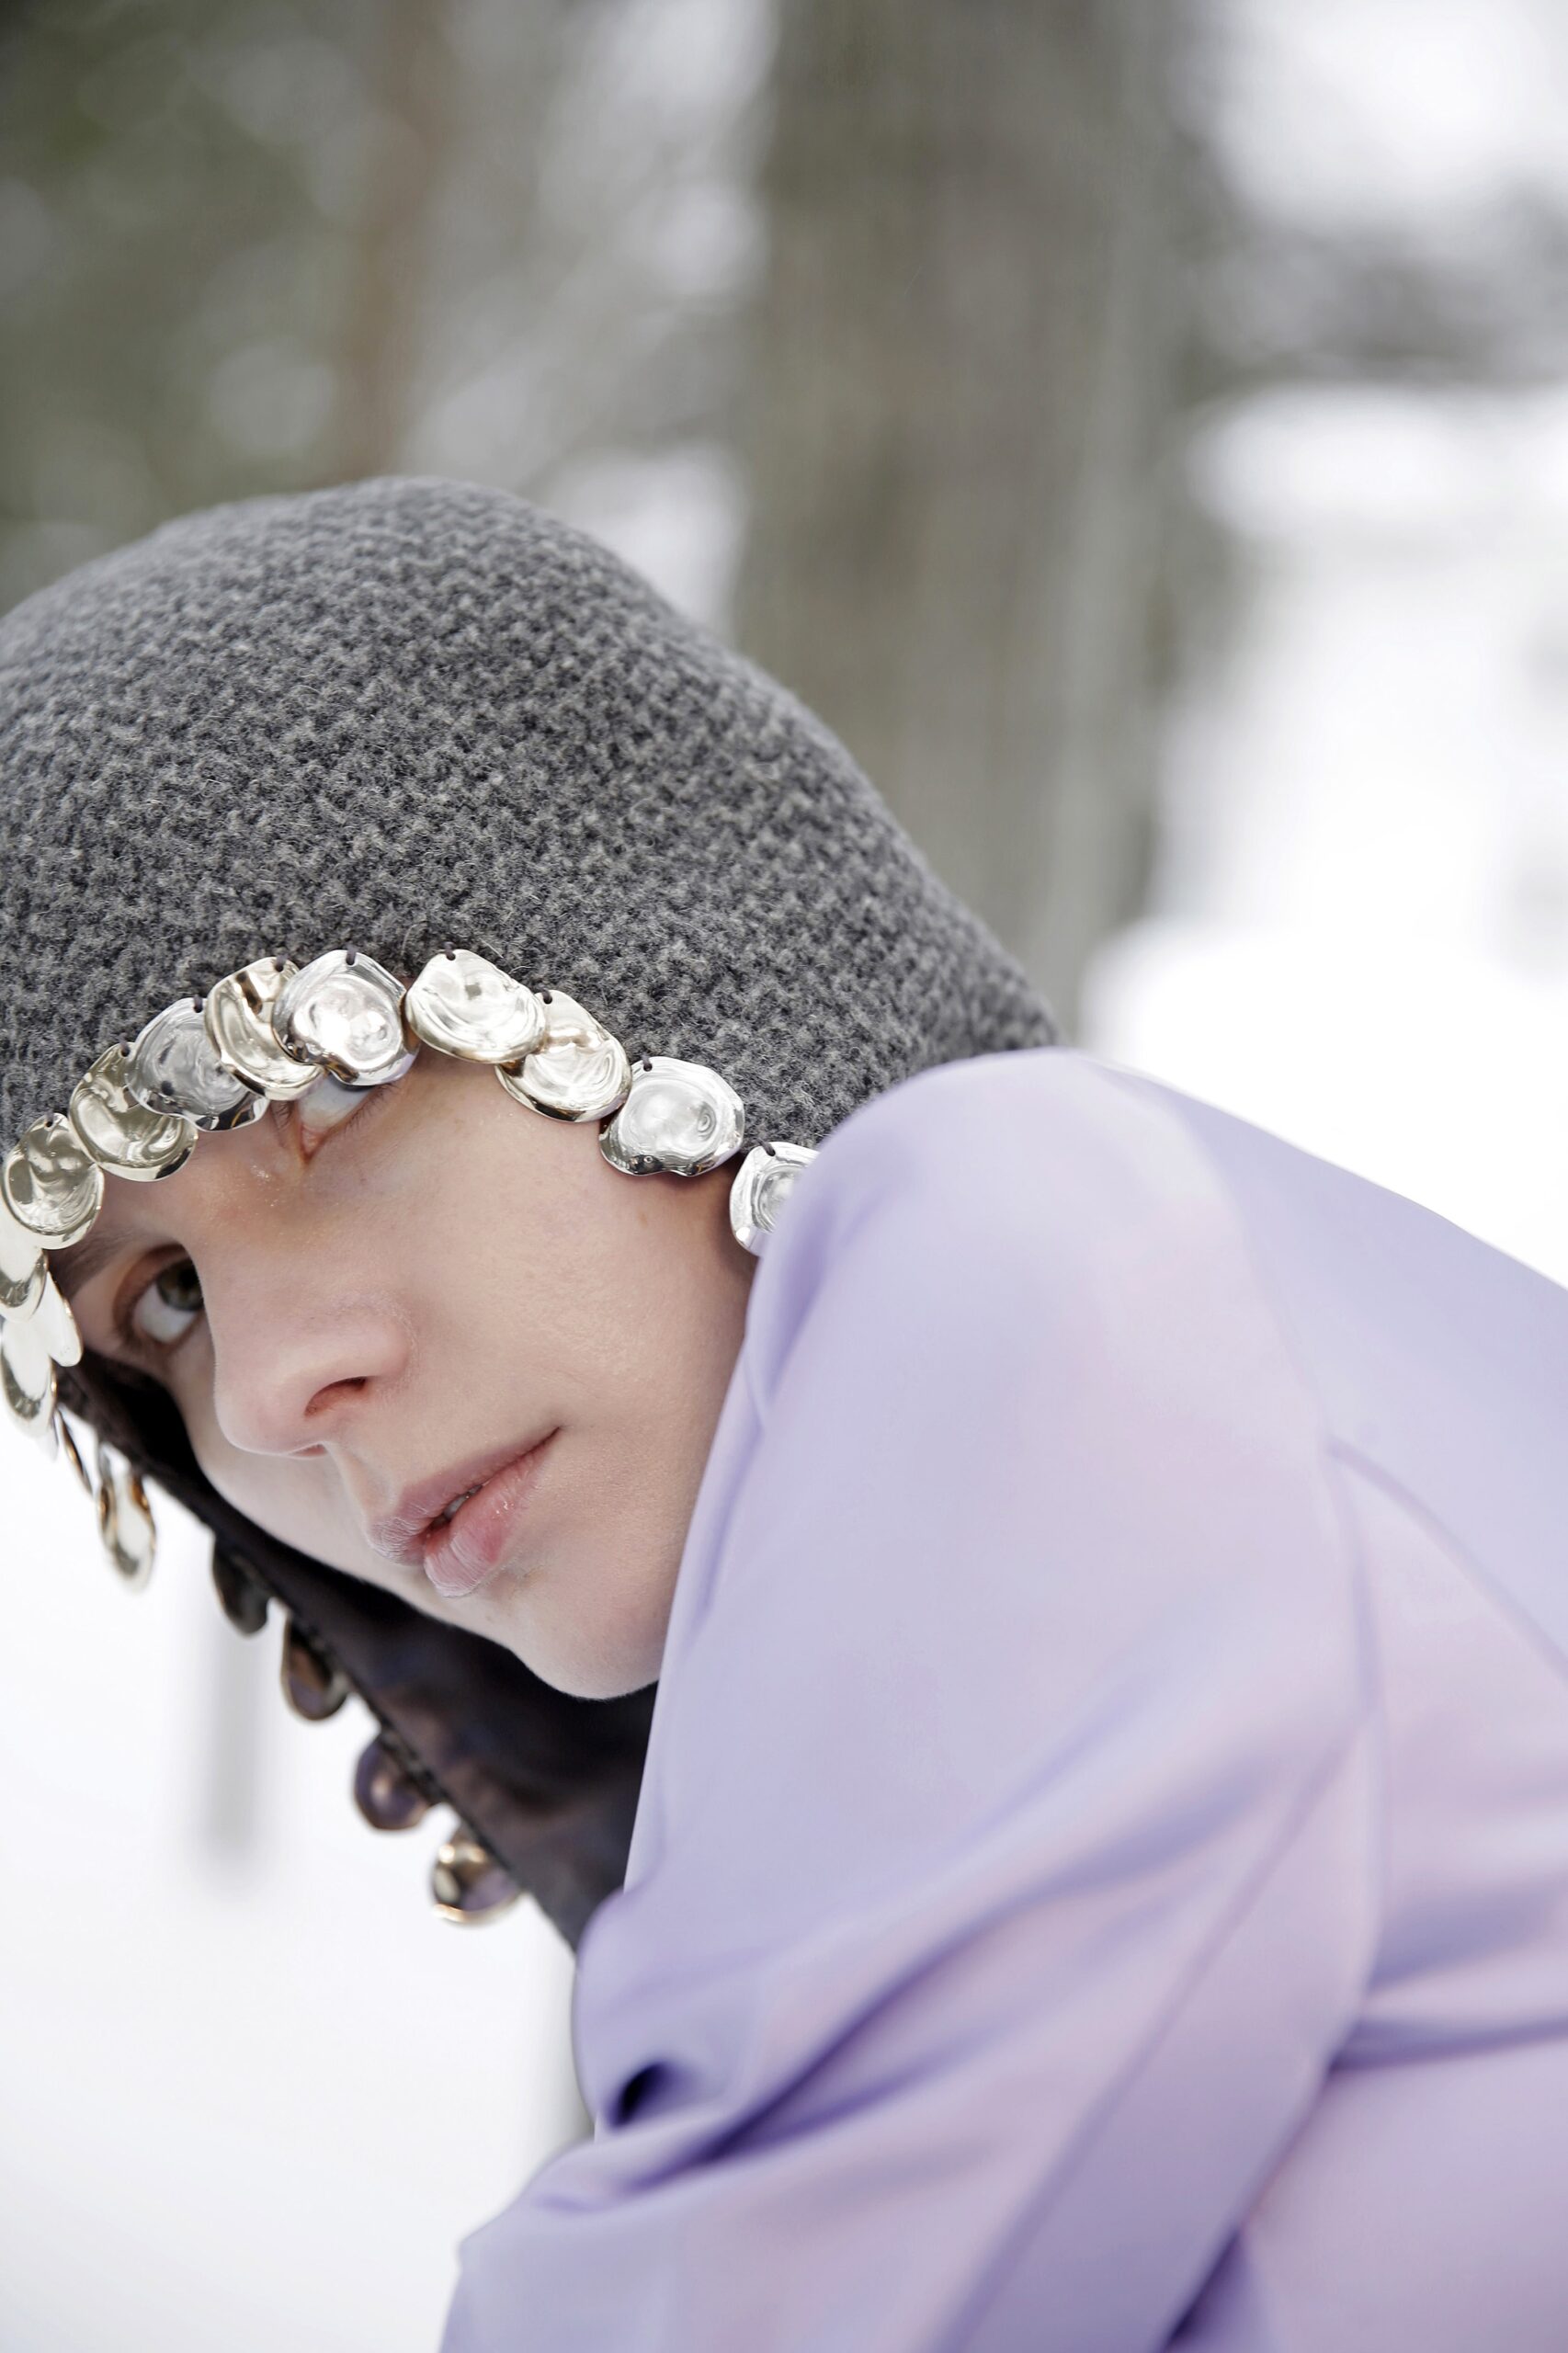 модный головной убор зима 2021 2022 теплое на голову шапка балаклава капор вязаный серый